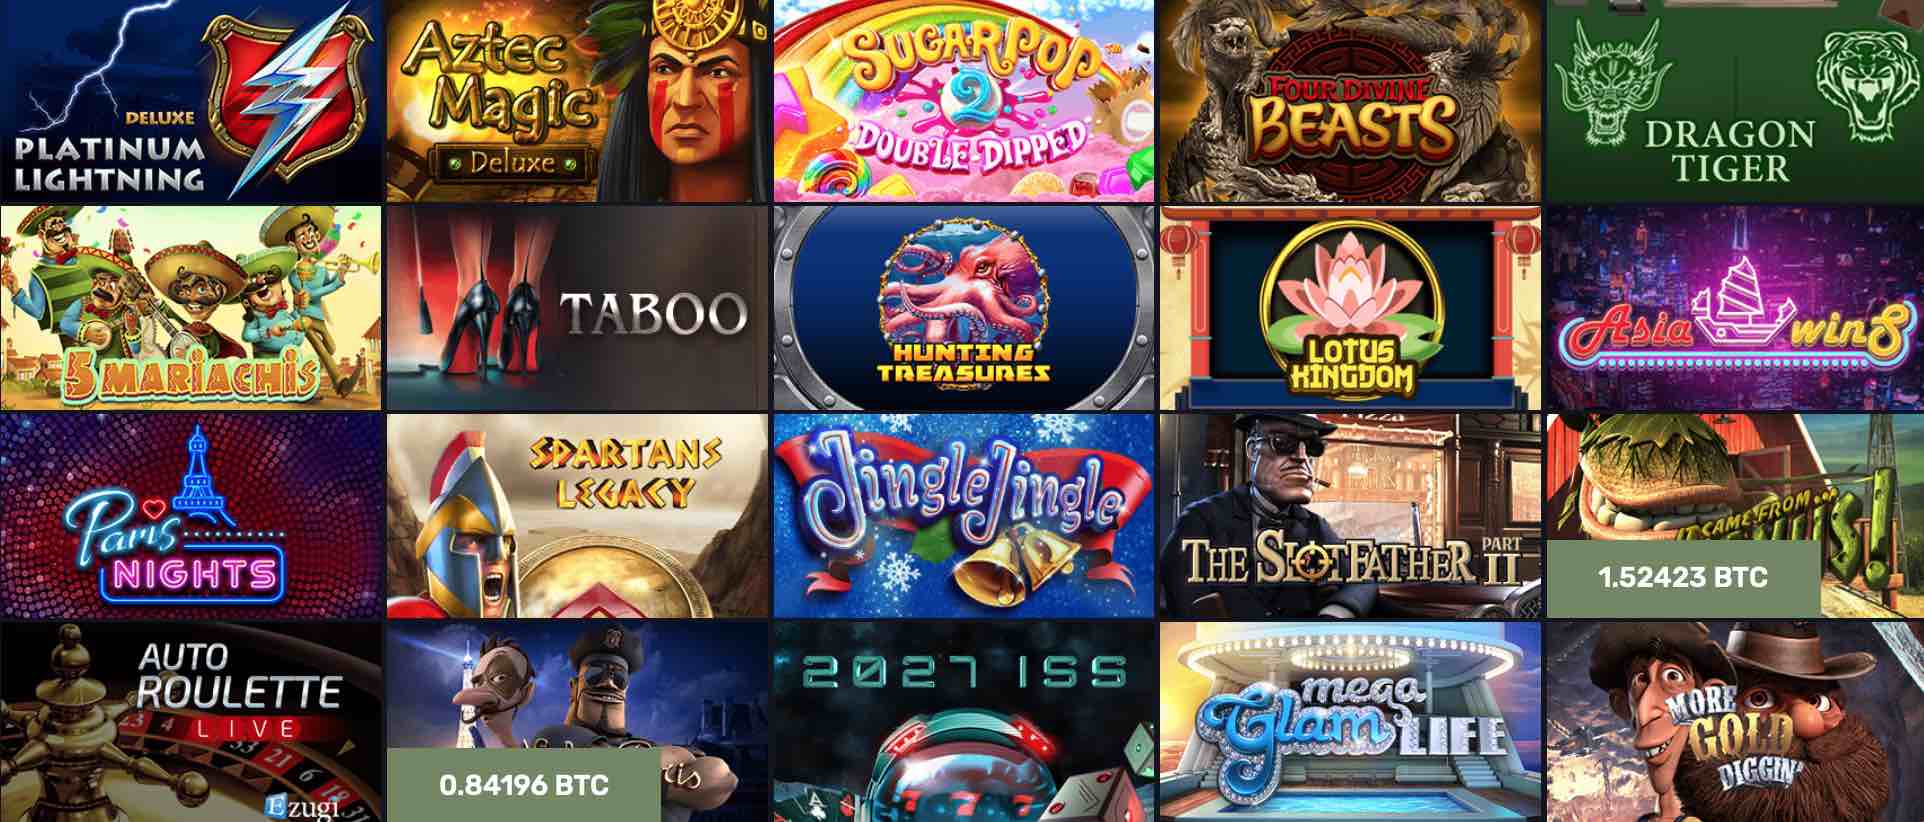 Online bitcoin casino live bitcoin roulette wheel